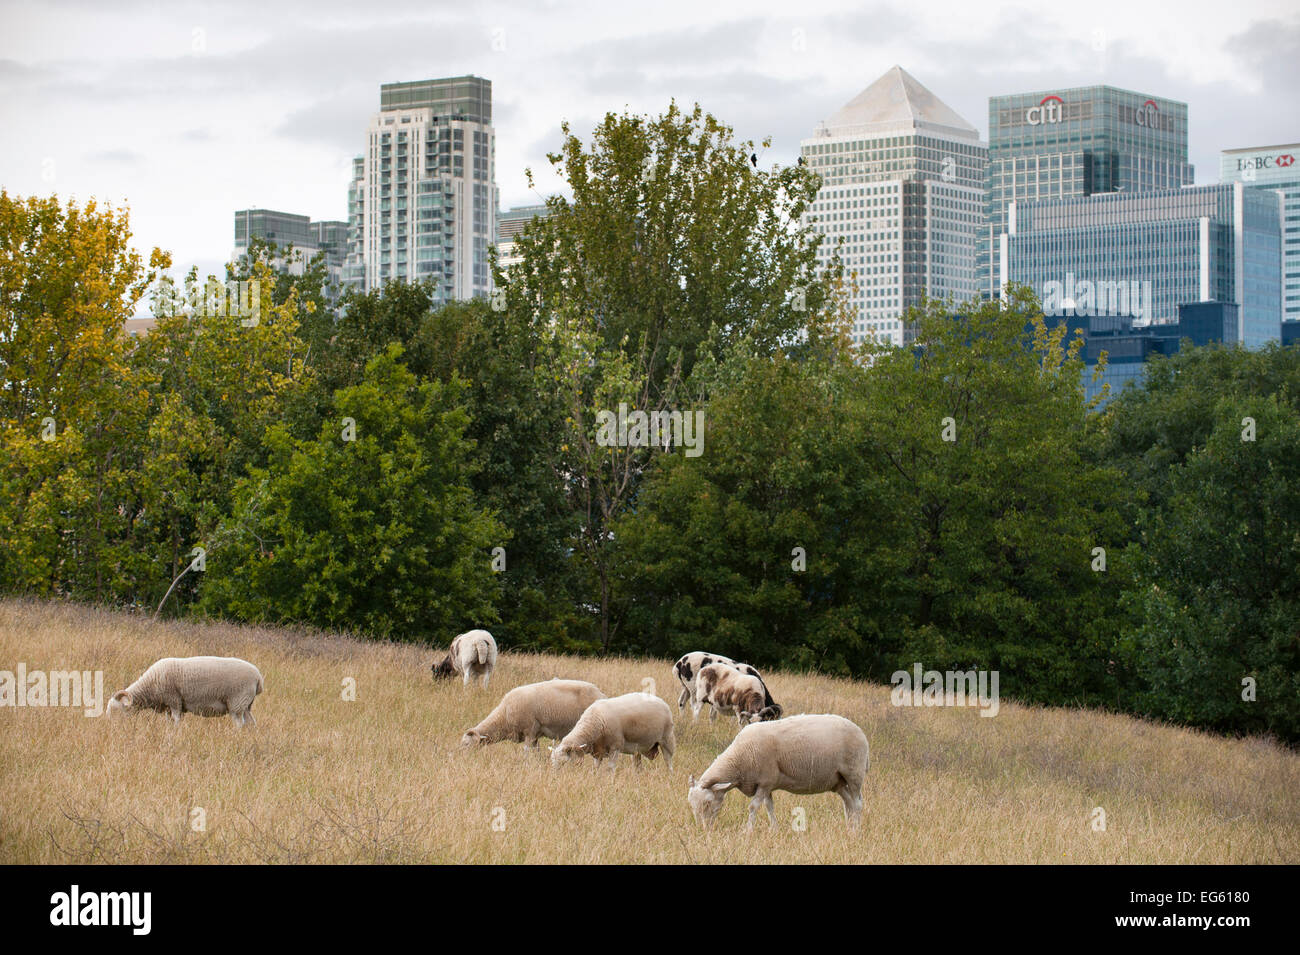 Inländische Schafe (Ovis aries) Beweidung auf die städtischen Weide, Mudchute Farm, Isle of Dogs, London, England, UK, August. Wussten Sie schon? Die domestizierung von Schafen ist es äußerst wichtig, den Menschen mehr als eine Milliarde teilen sich jetzt den Planeten mit uns! Stockfoto